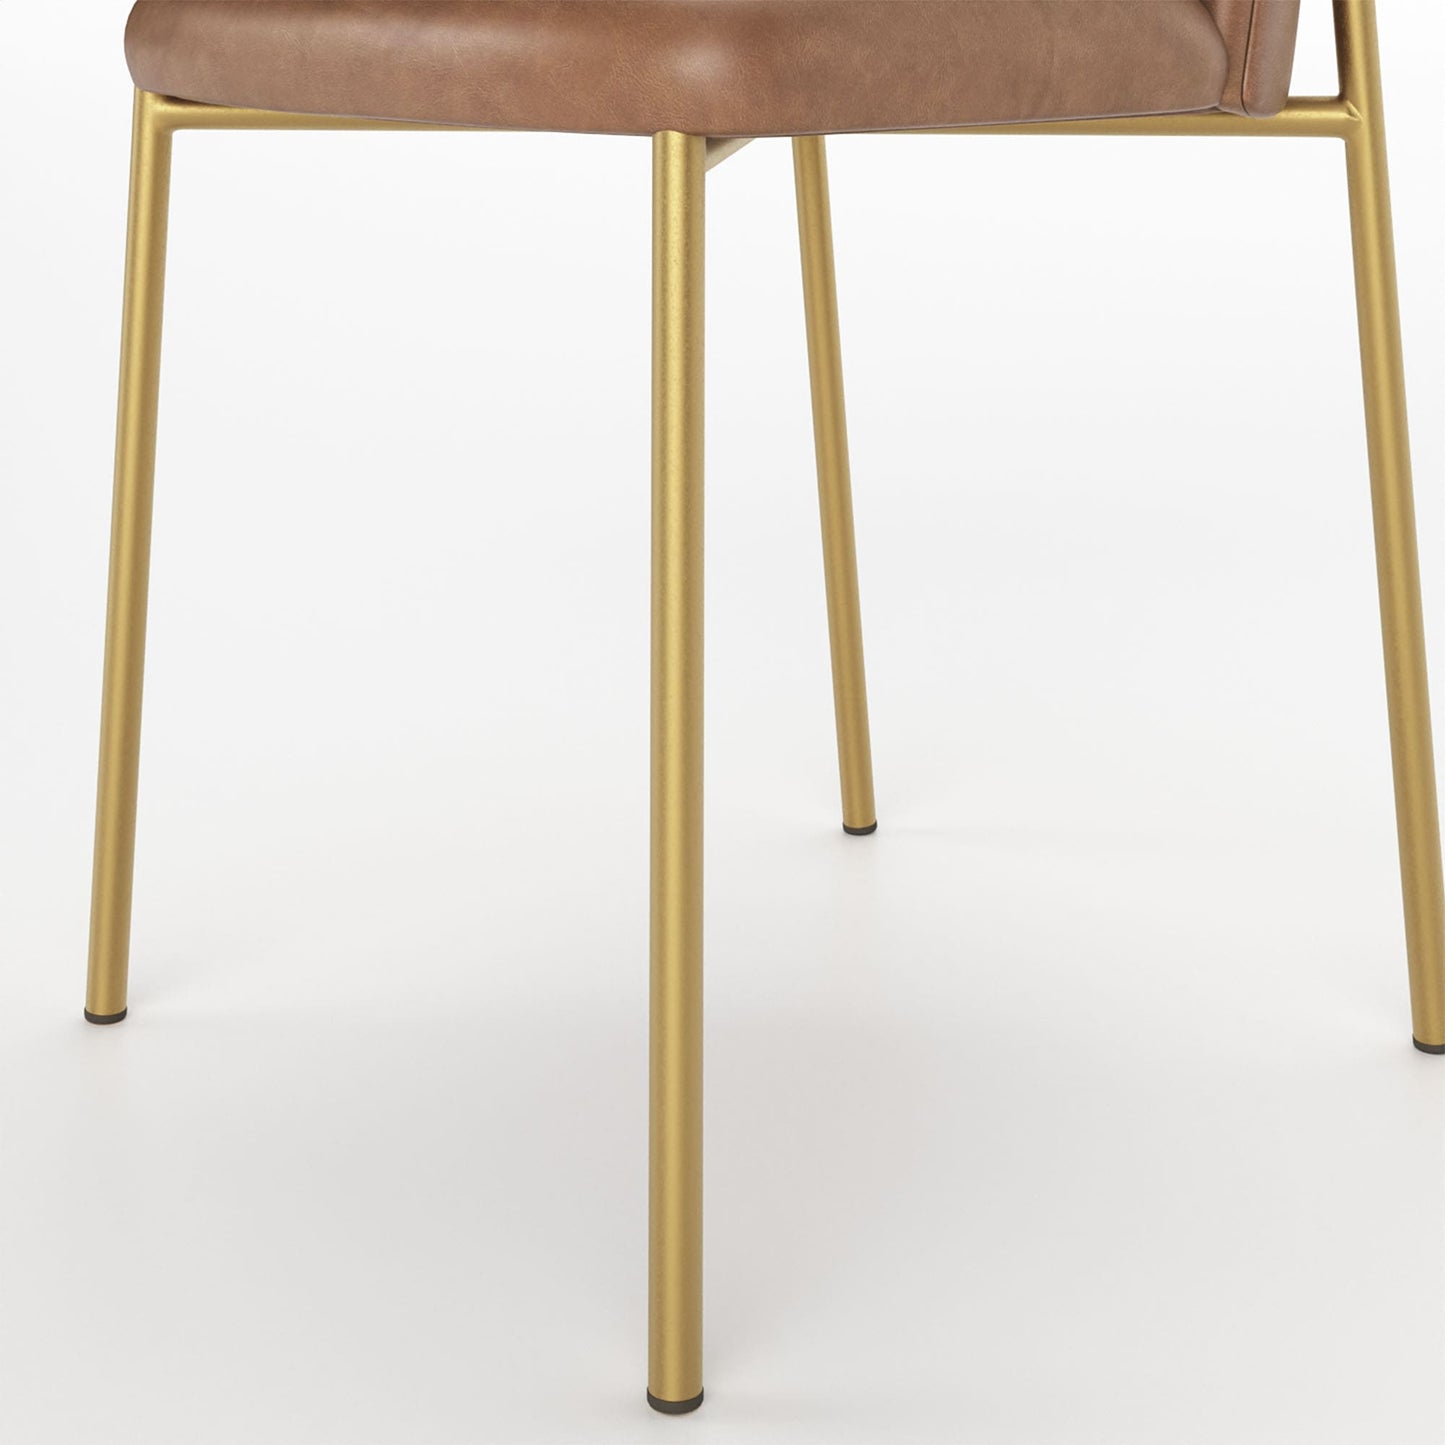 Conjunto de 2 Cadeiras Lucille - Dourado c/ PU Caramelo